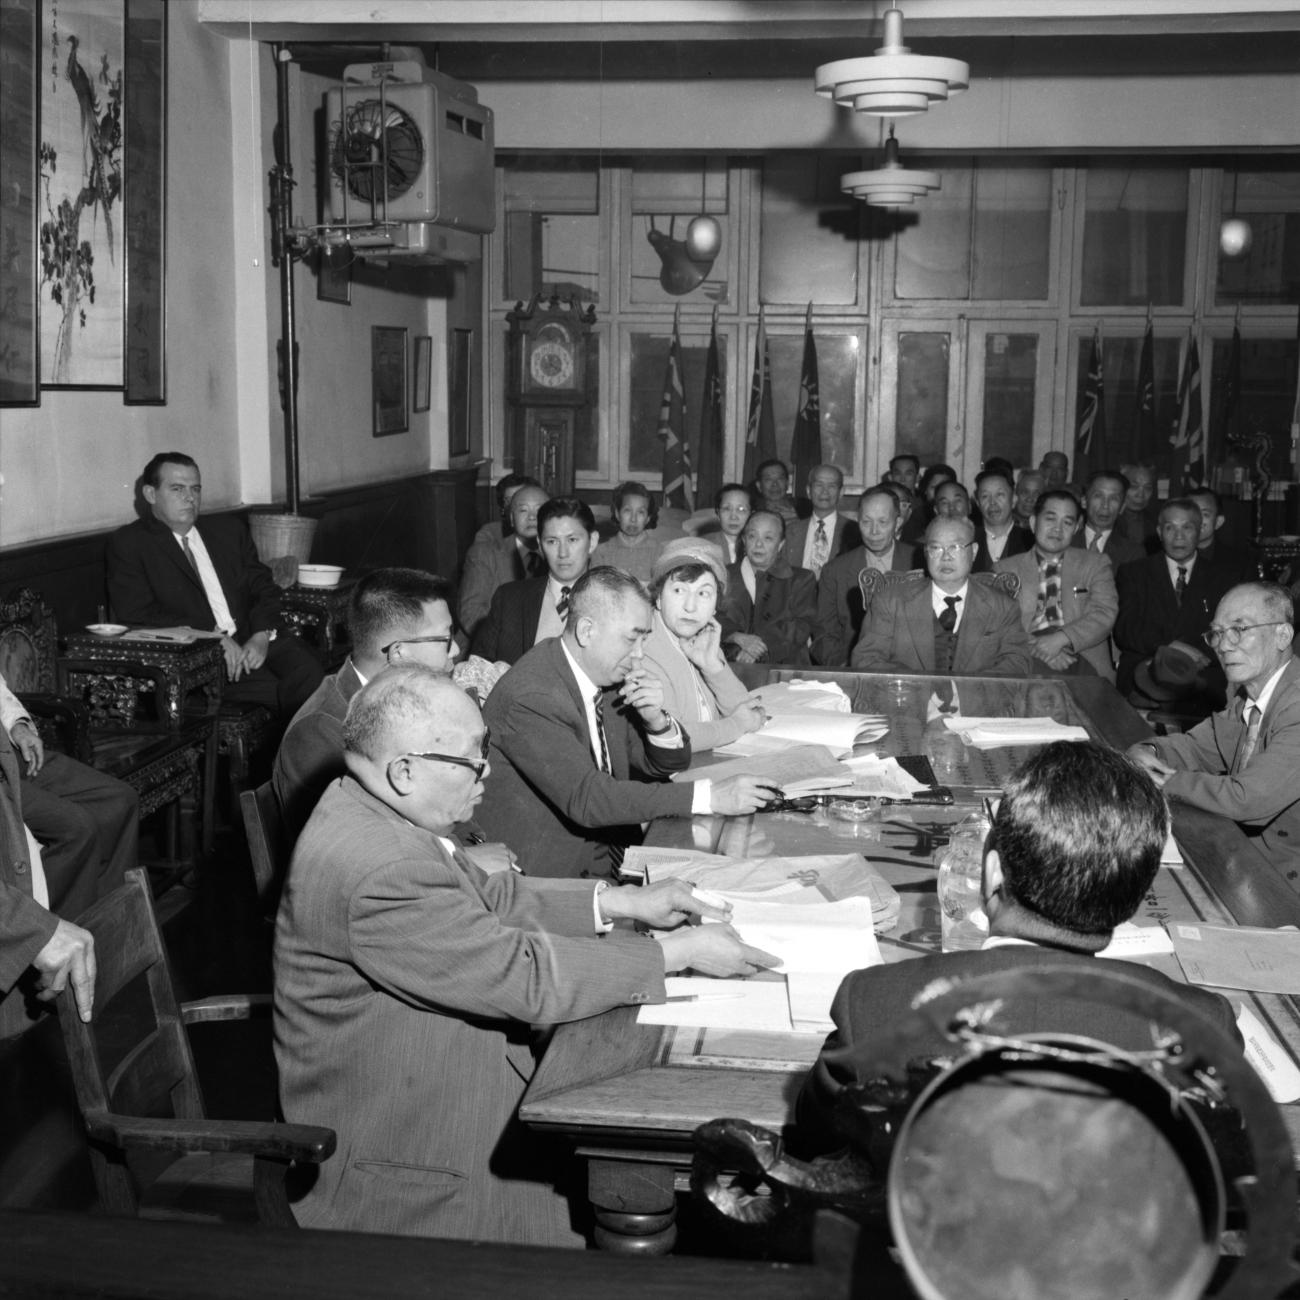 Wong Foon Sien assis à une table avec cinq autres personnes et d’autres gens assis dans les autres rangées de chaises.